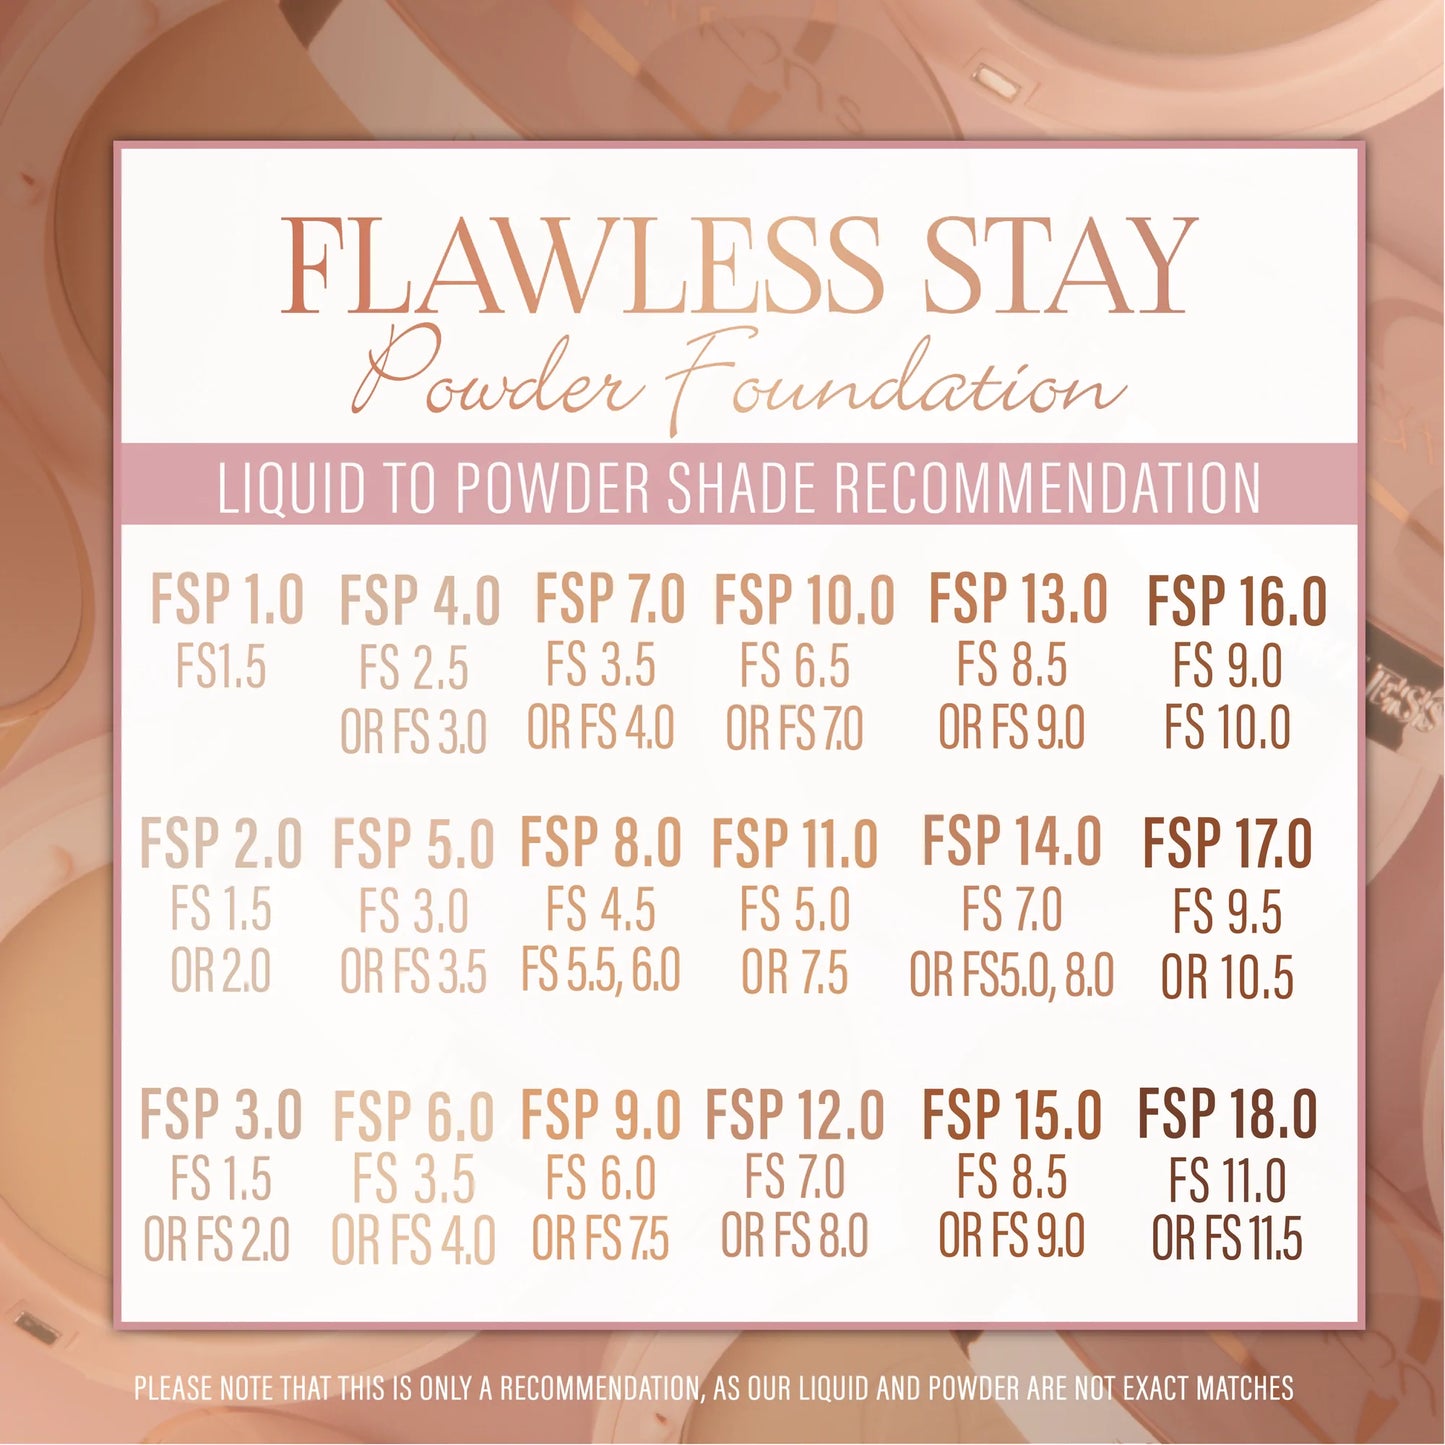 17.0 - Flawless Stay Powder Foundation